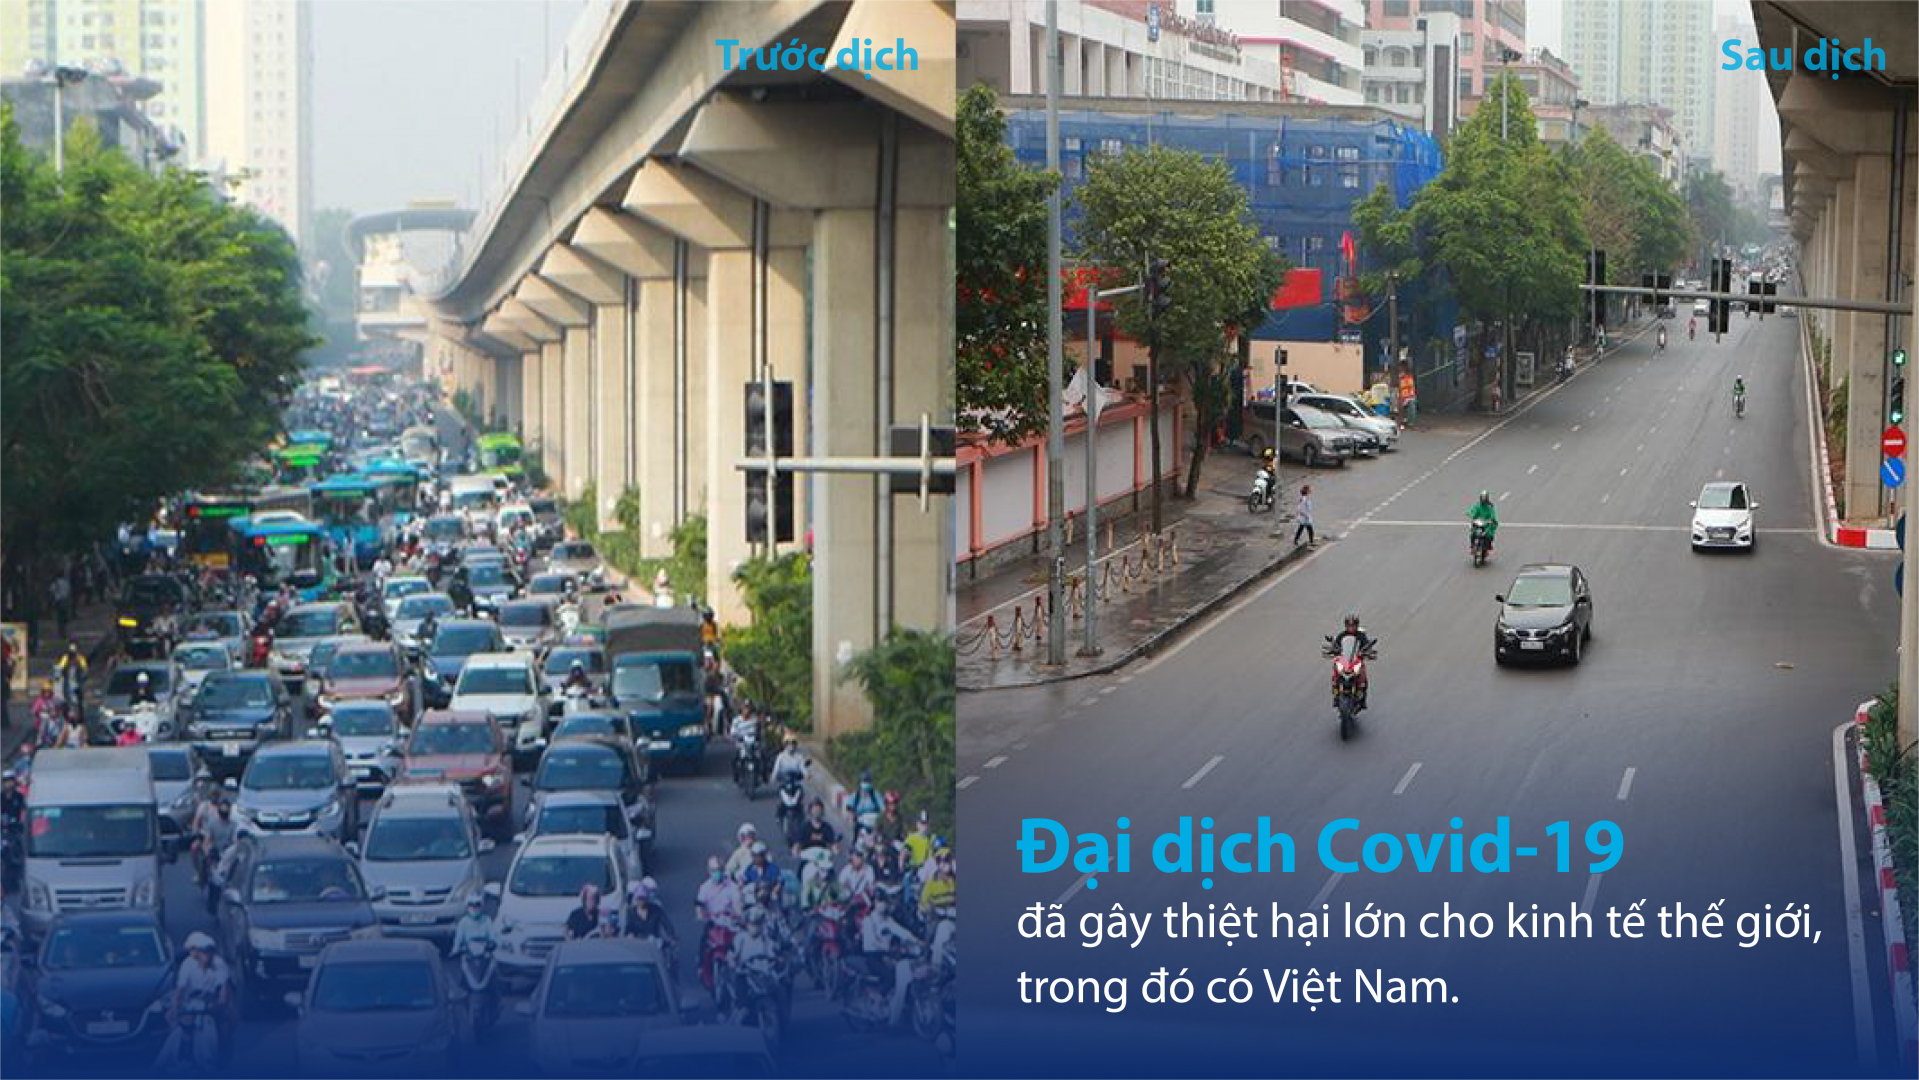 Đại dịch Covid19 gây thiệt hại lớn cho kinh tế thế giới và Việt Nam